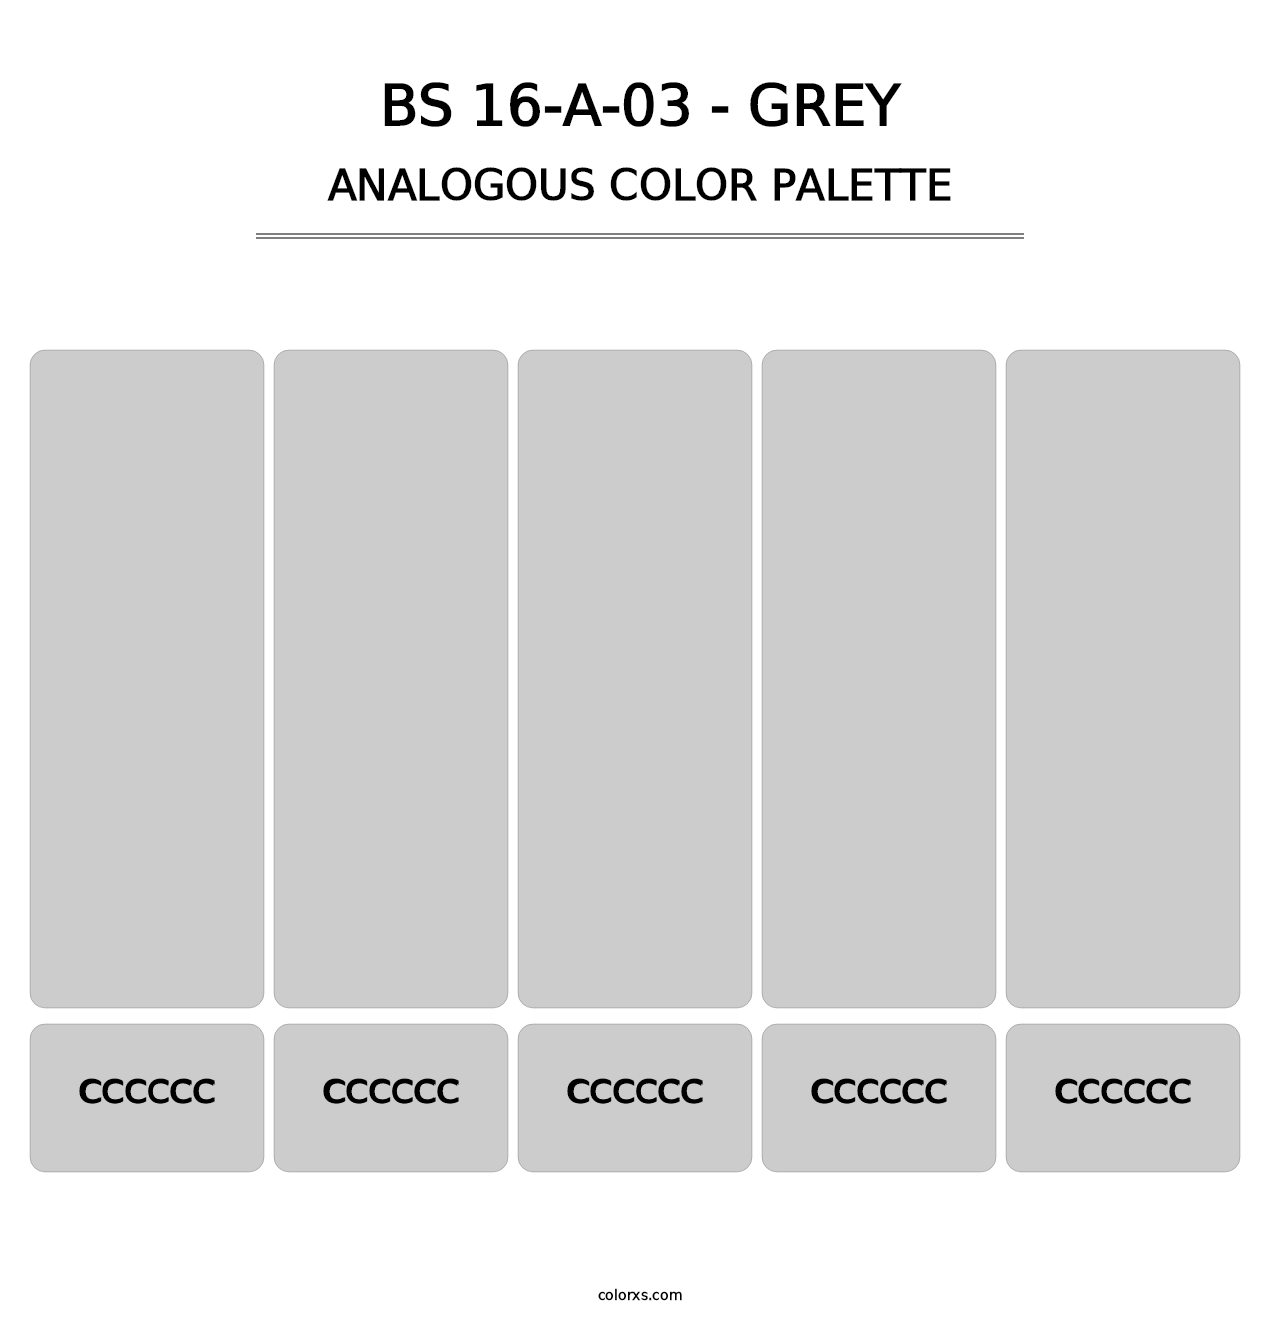 BS 16-A-03 - Grey - Analogous Color Palette